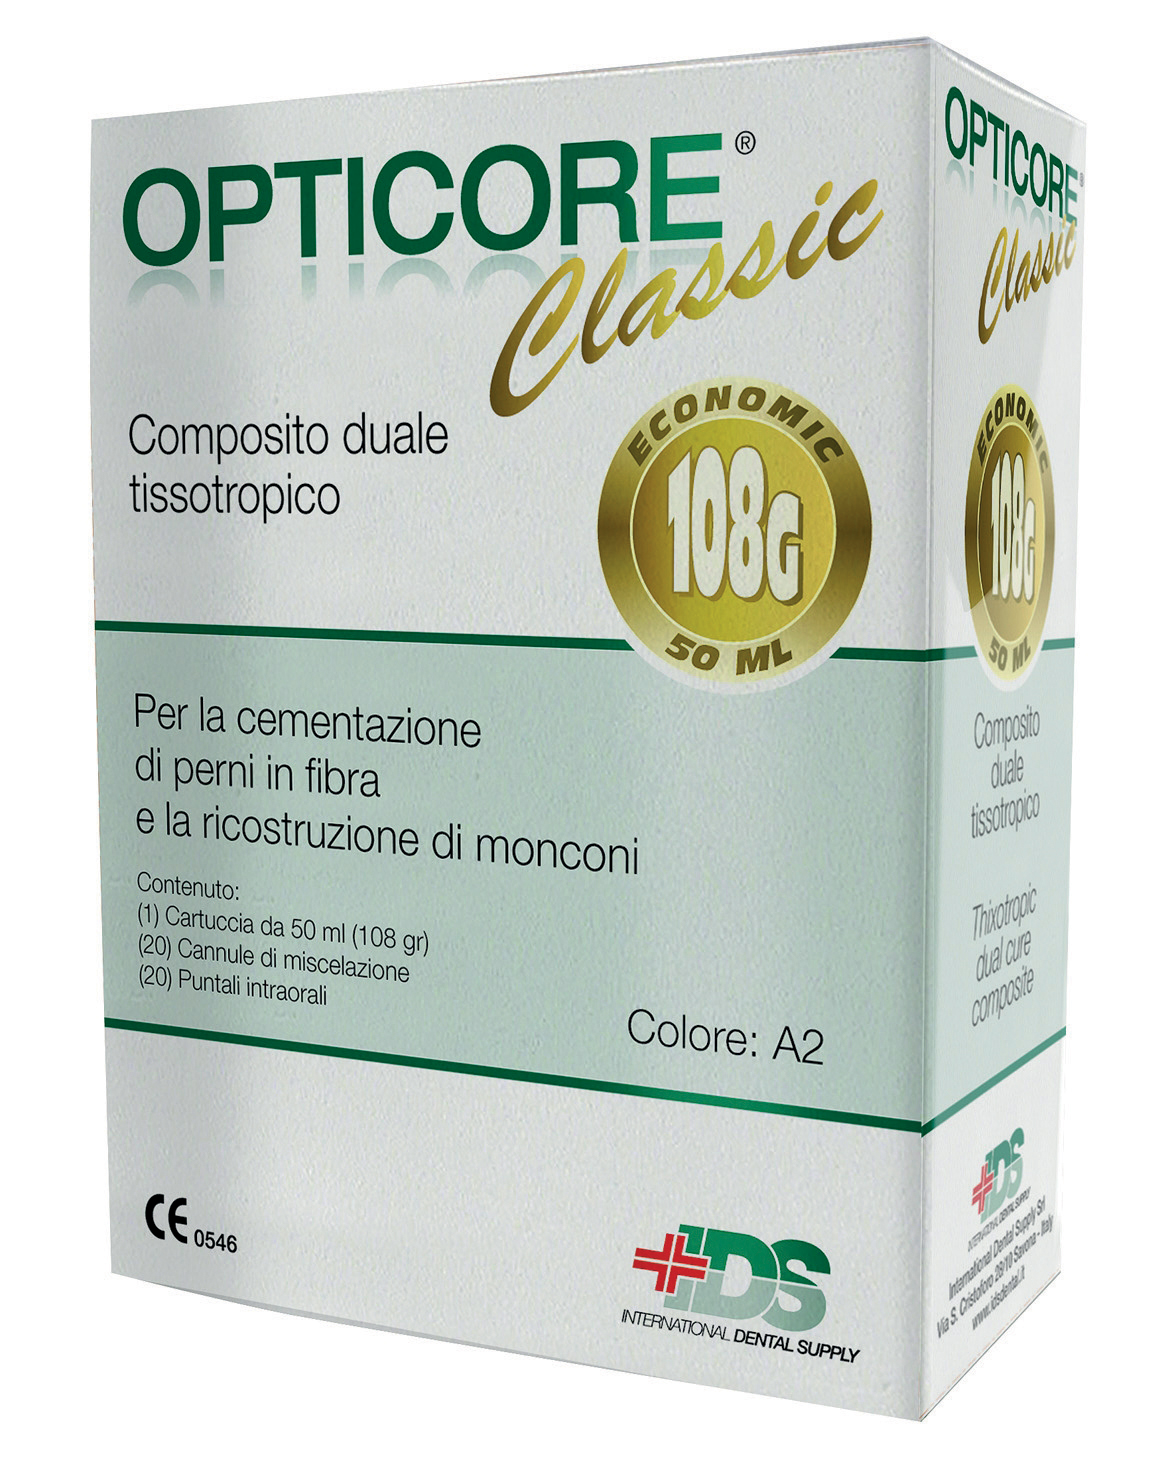 Opticore Classic IDS colore A2 cartuccia da 50 ml